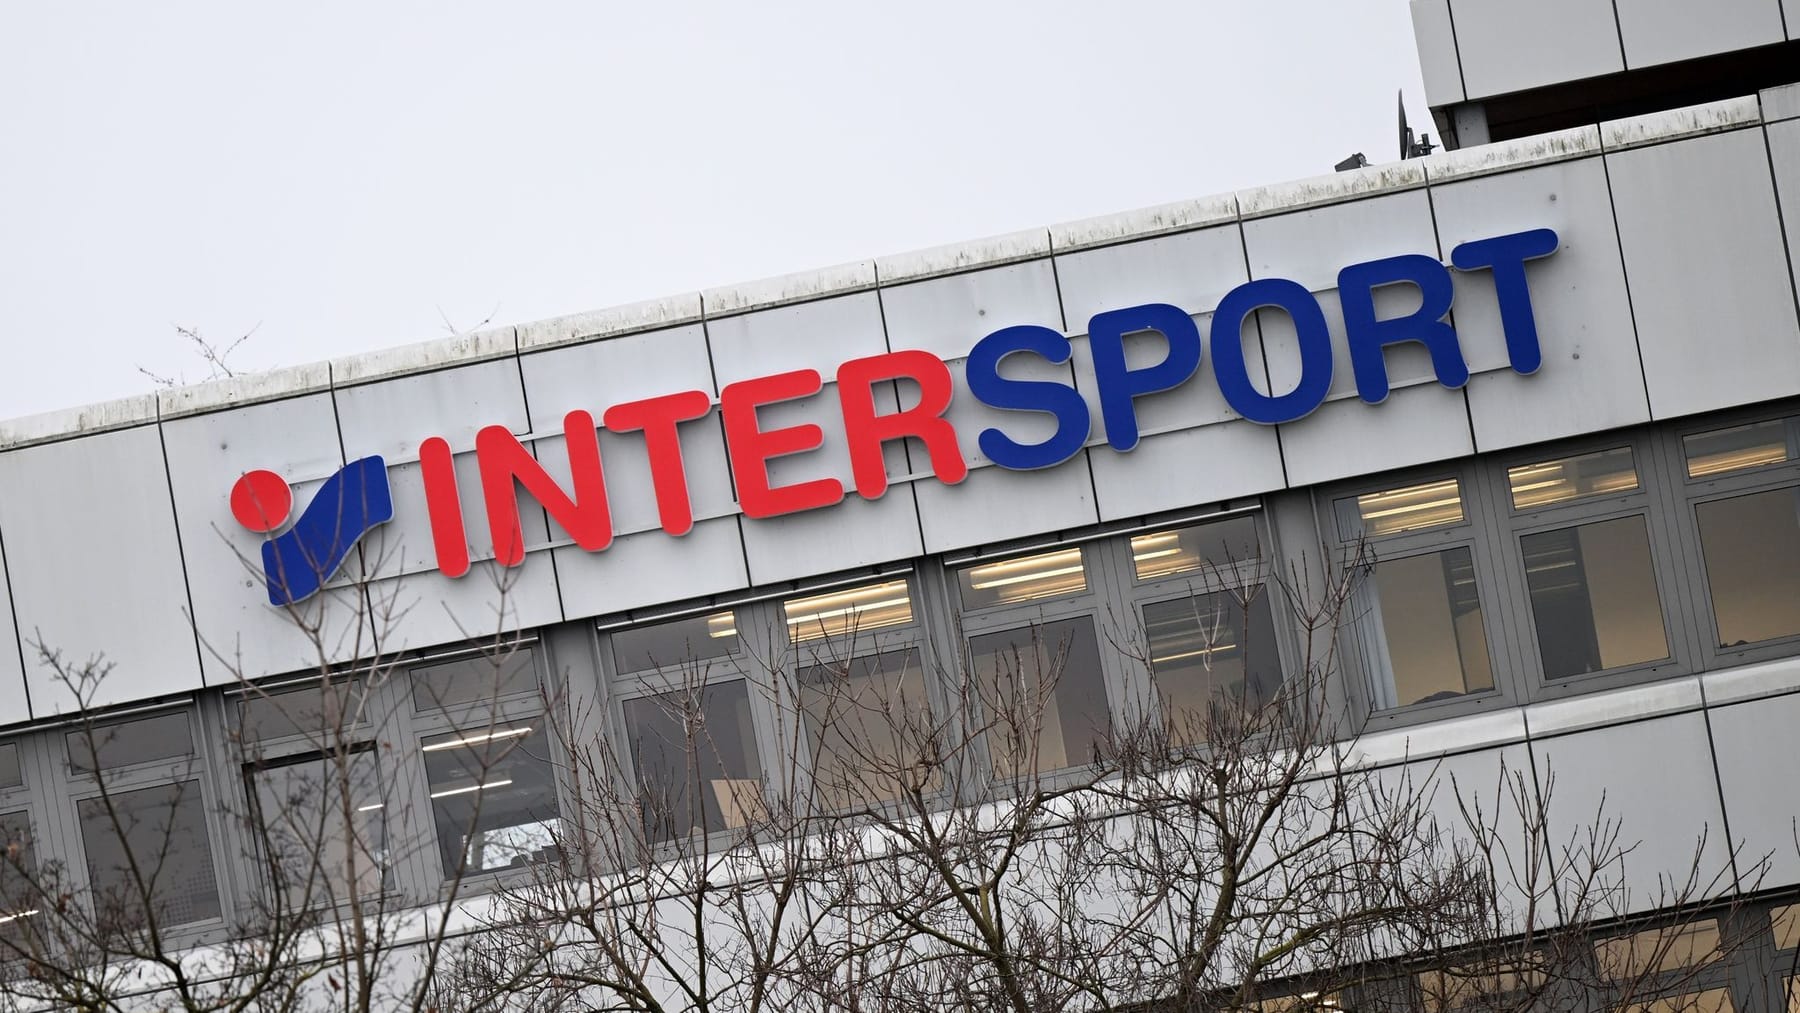 Intersport vuole vendere Voswinkel a un rivenditore italiano